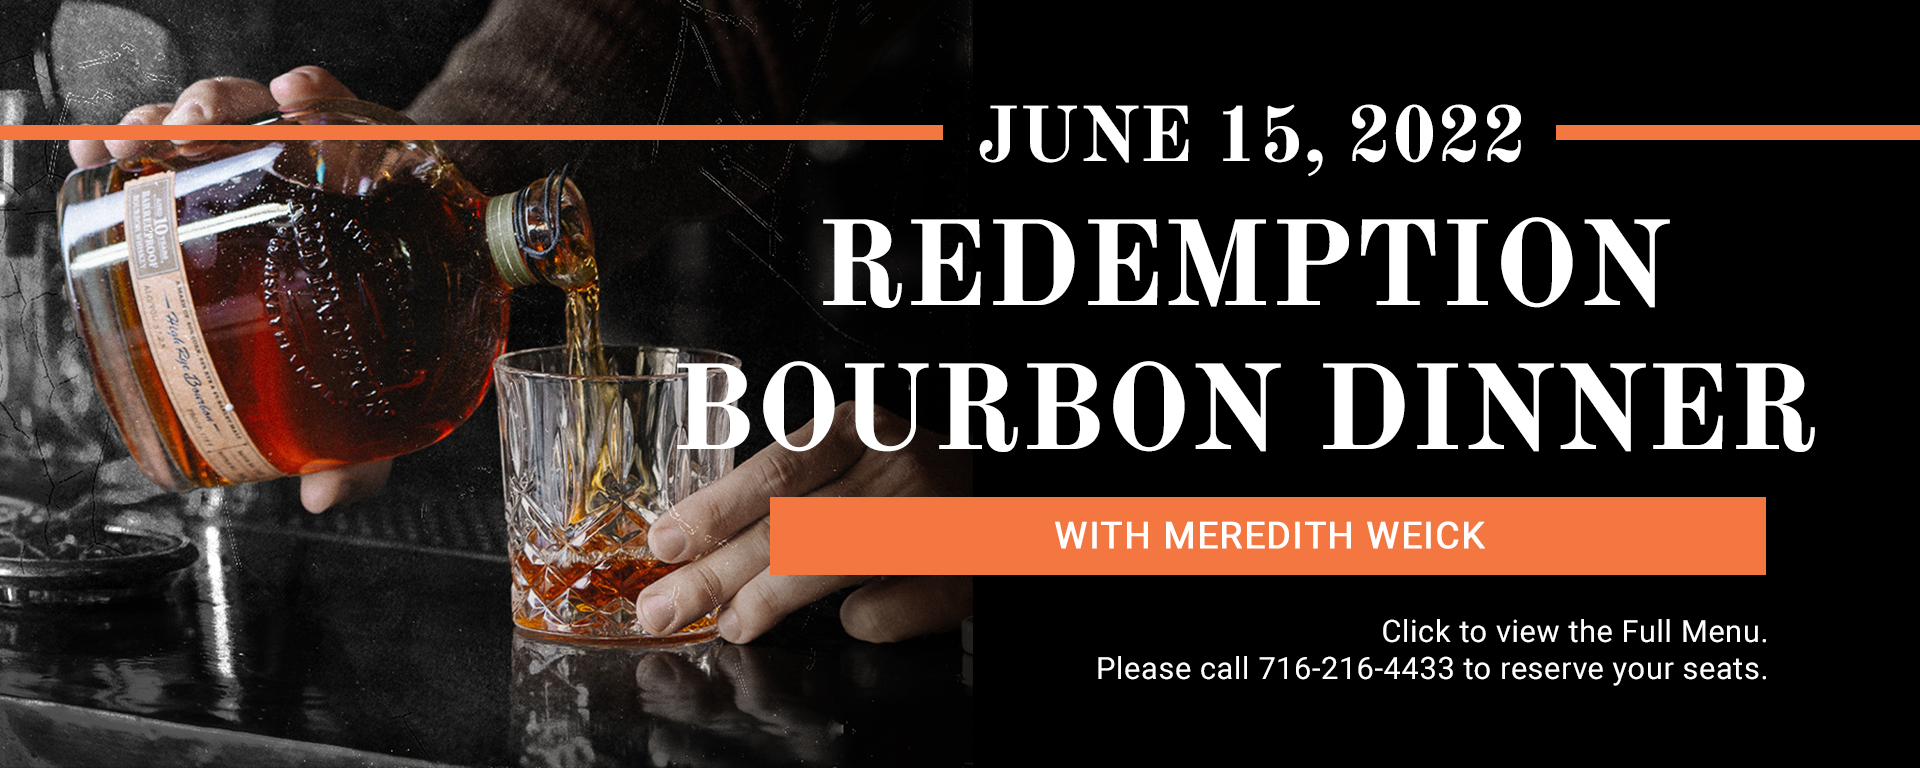 06/15/22 Redemption Bourbon Dinner